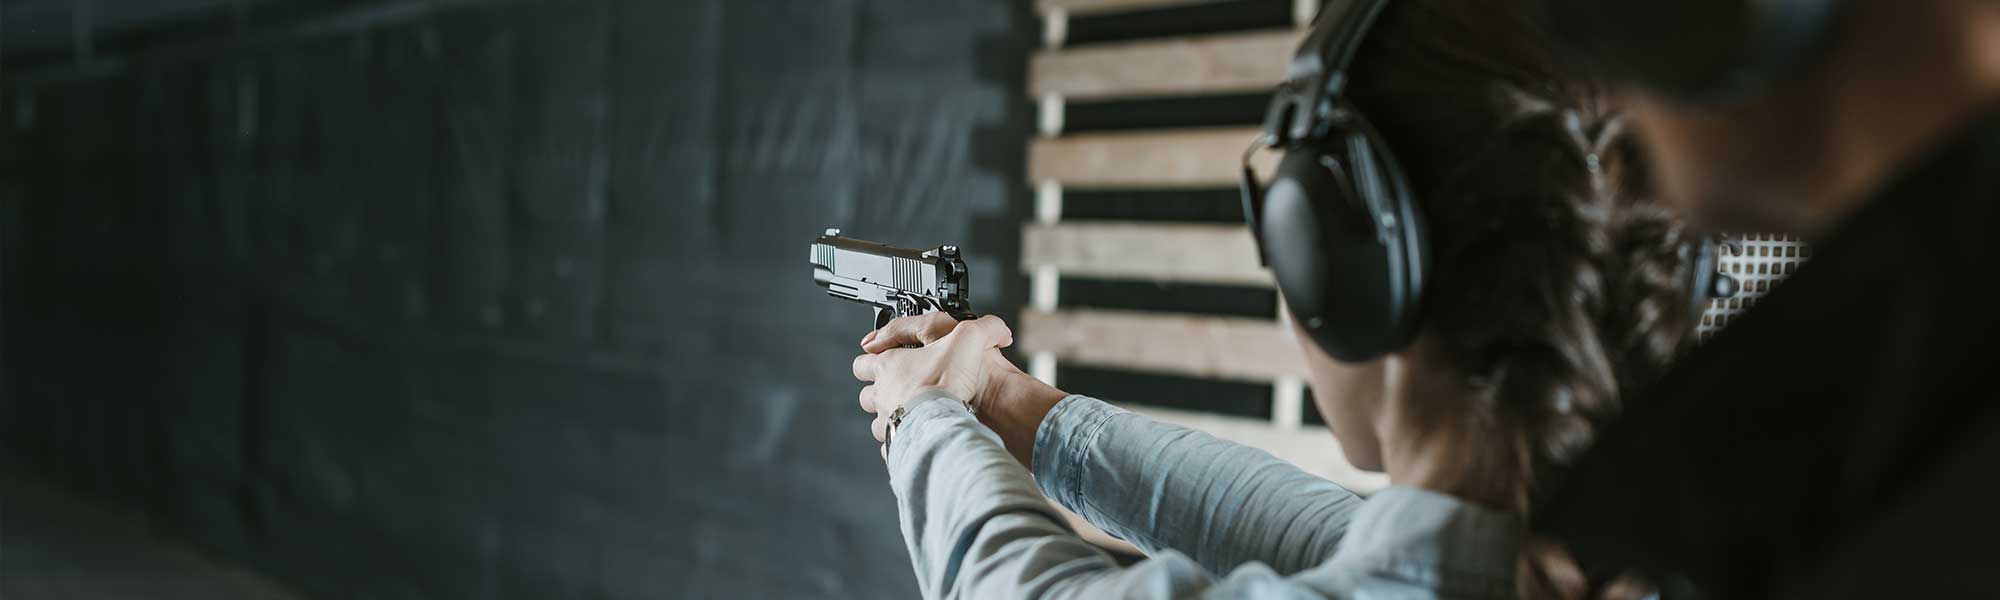 Woman at Gun Range